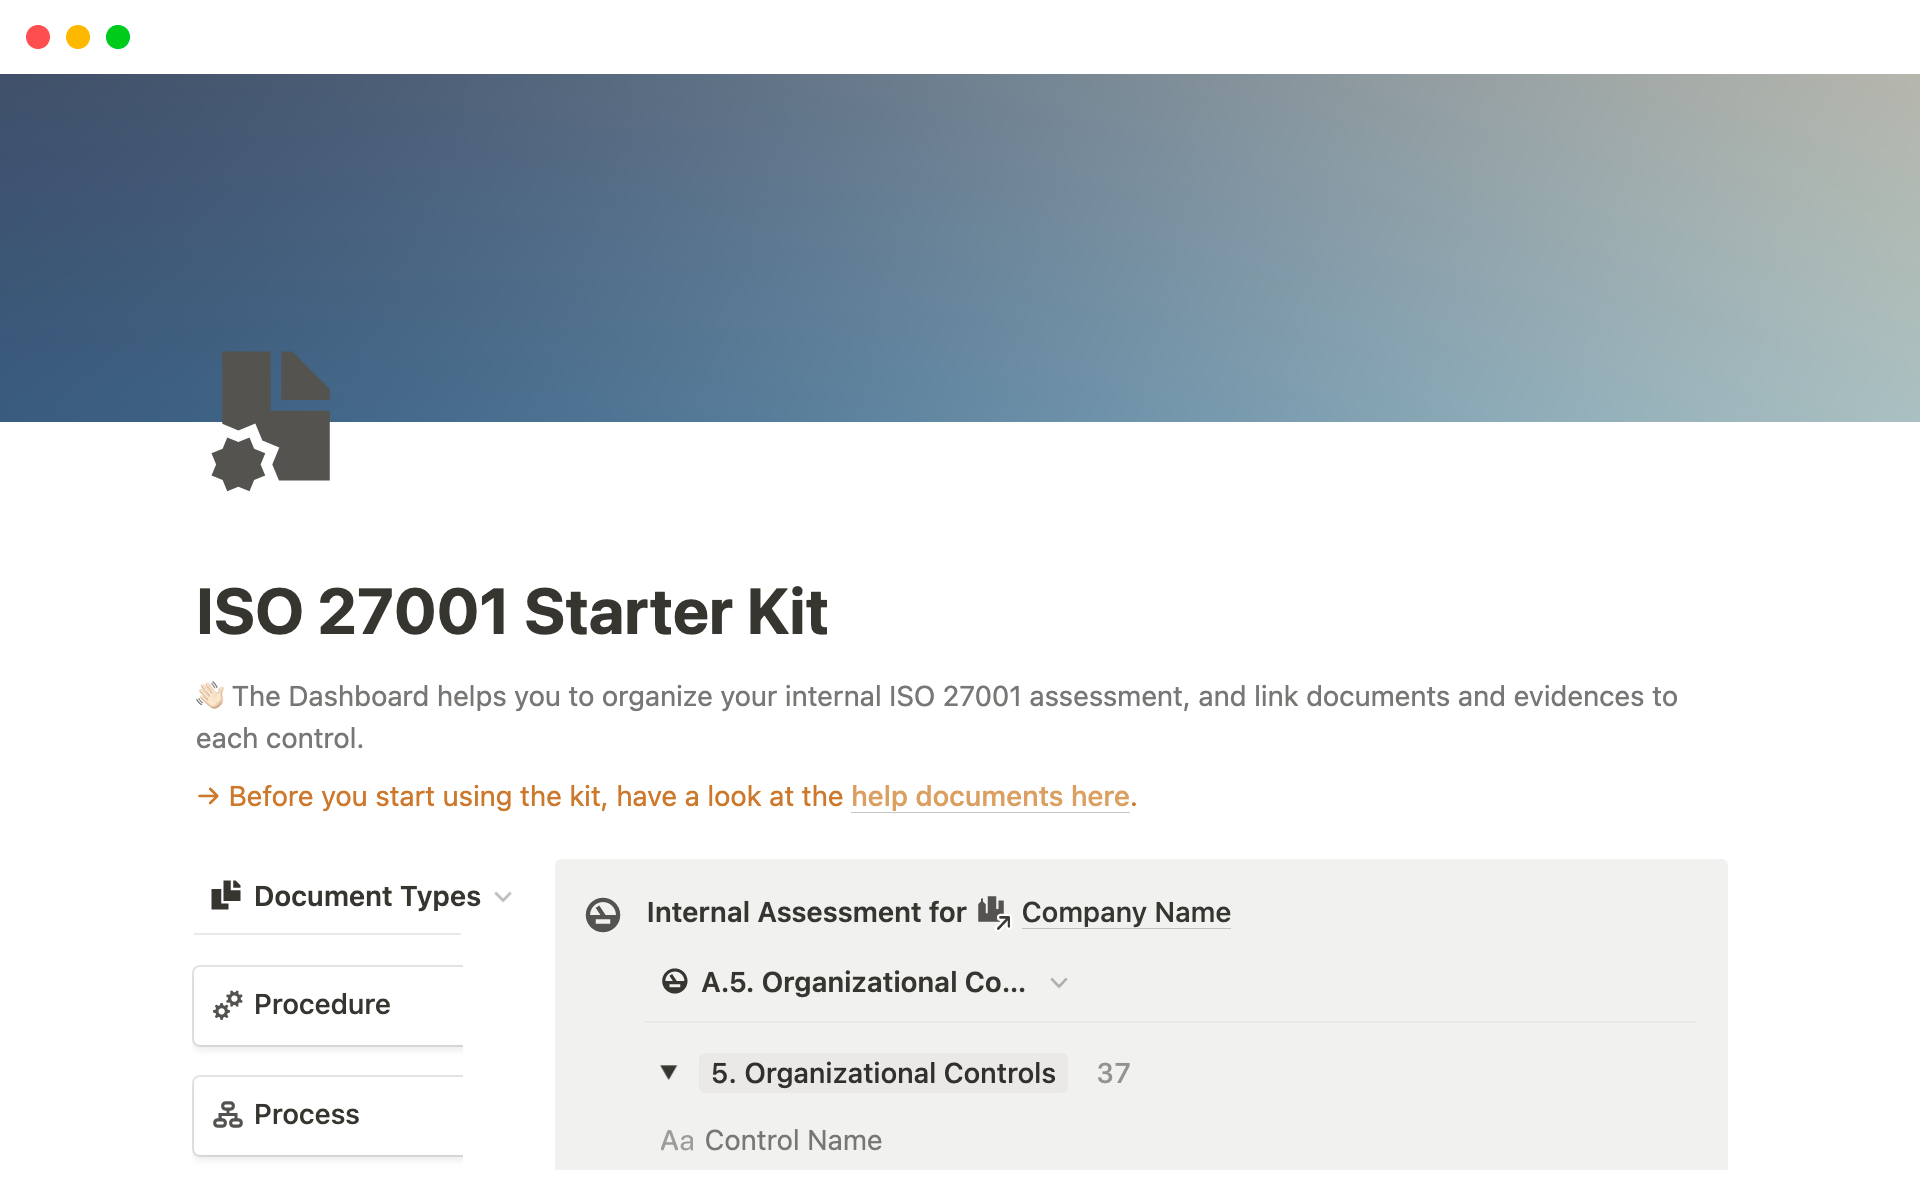 Uma prévia do modelo para ISO 27001 Starter Kit